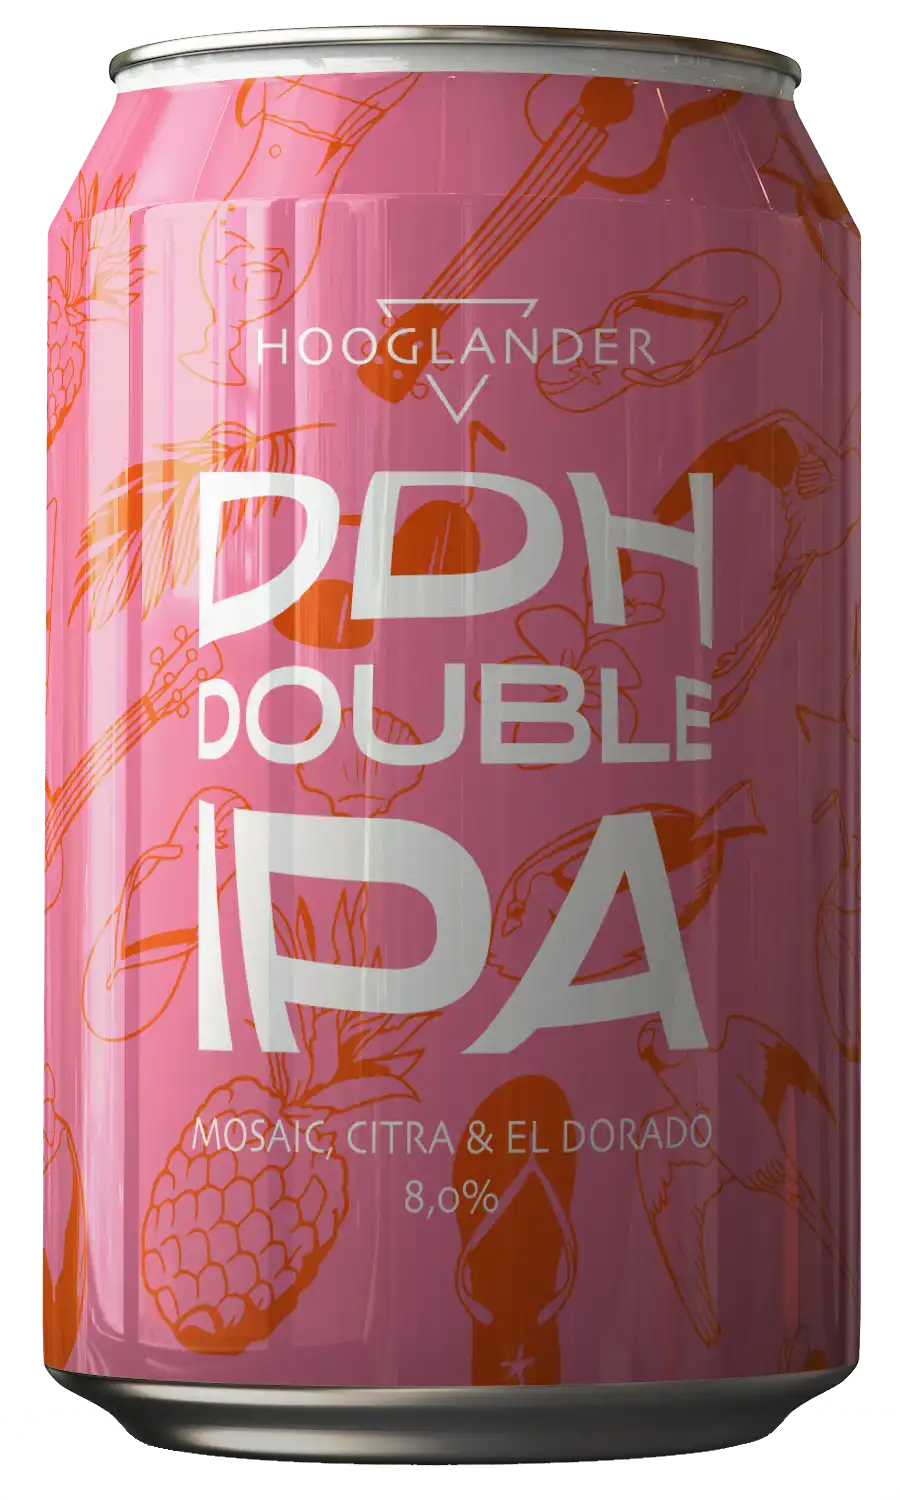 Hooglander_web_ddh double ipa